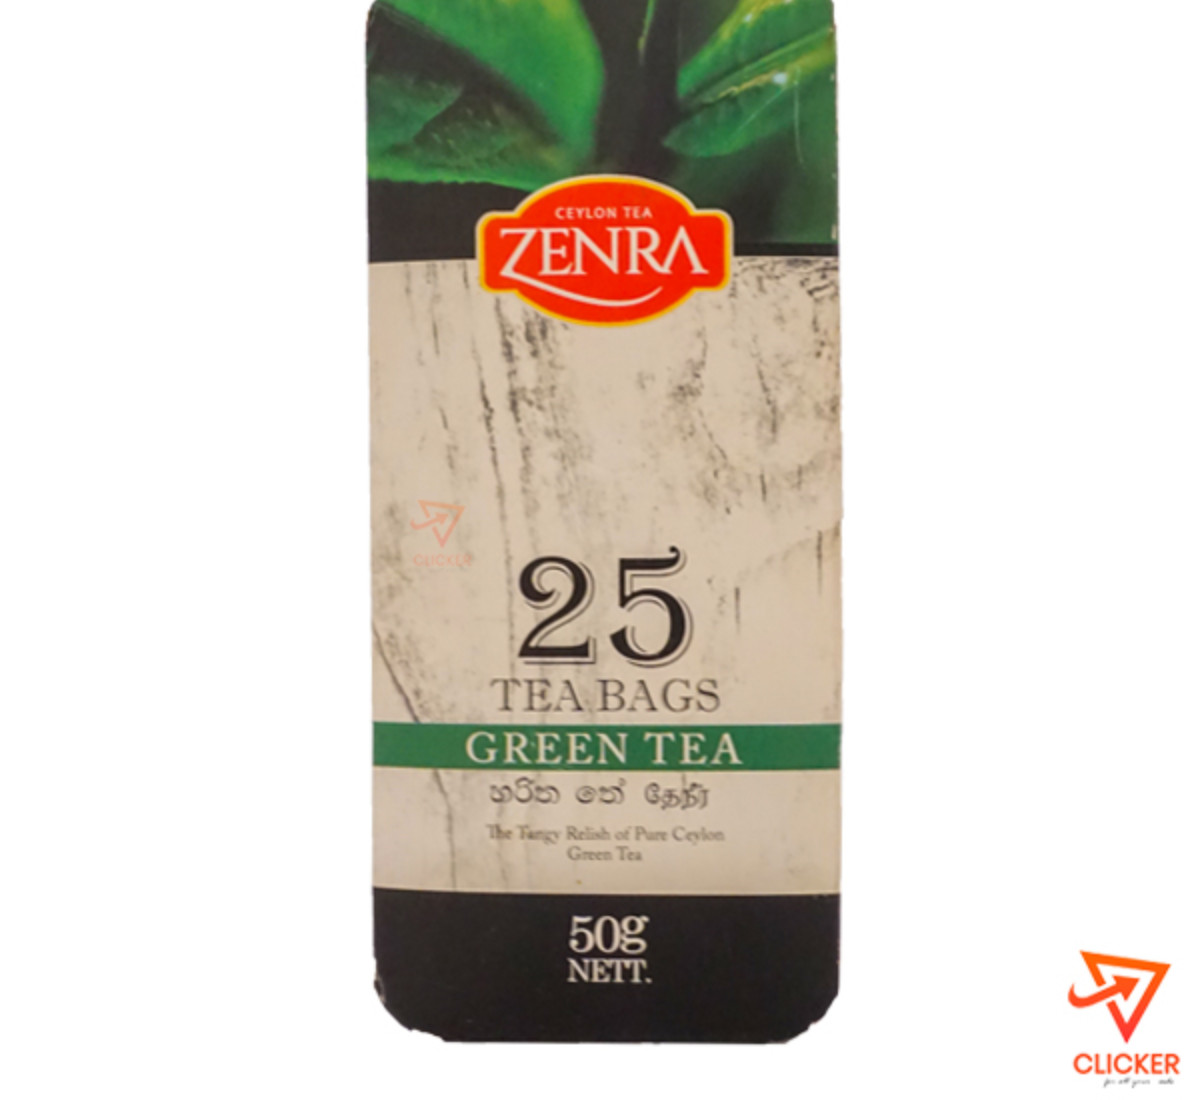 Clicker product 50g ZENRA  green tea (25 tea bags) 933